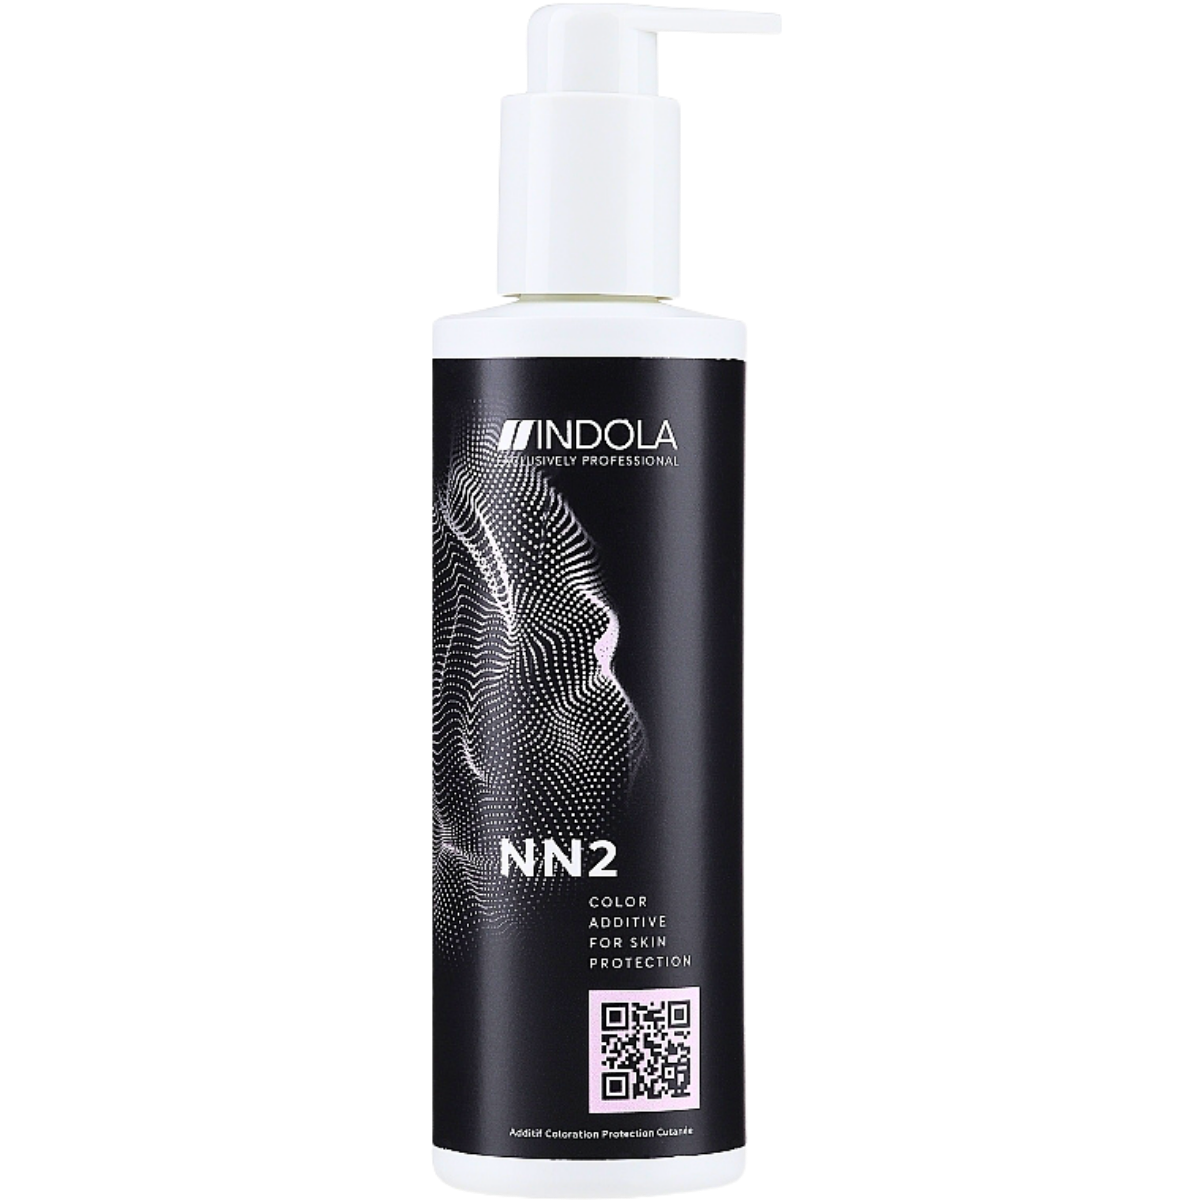 תכשיר הגנה לעור הקרקפת פרופסיון NN2 אינדולה 250 מ"ל